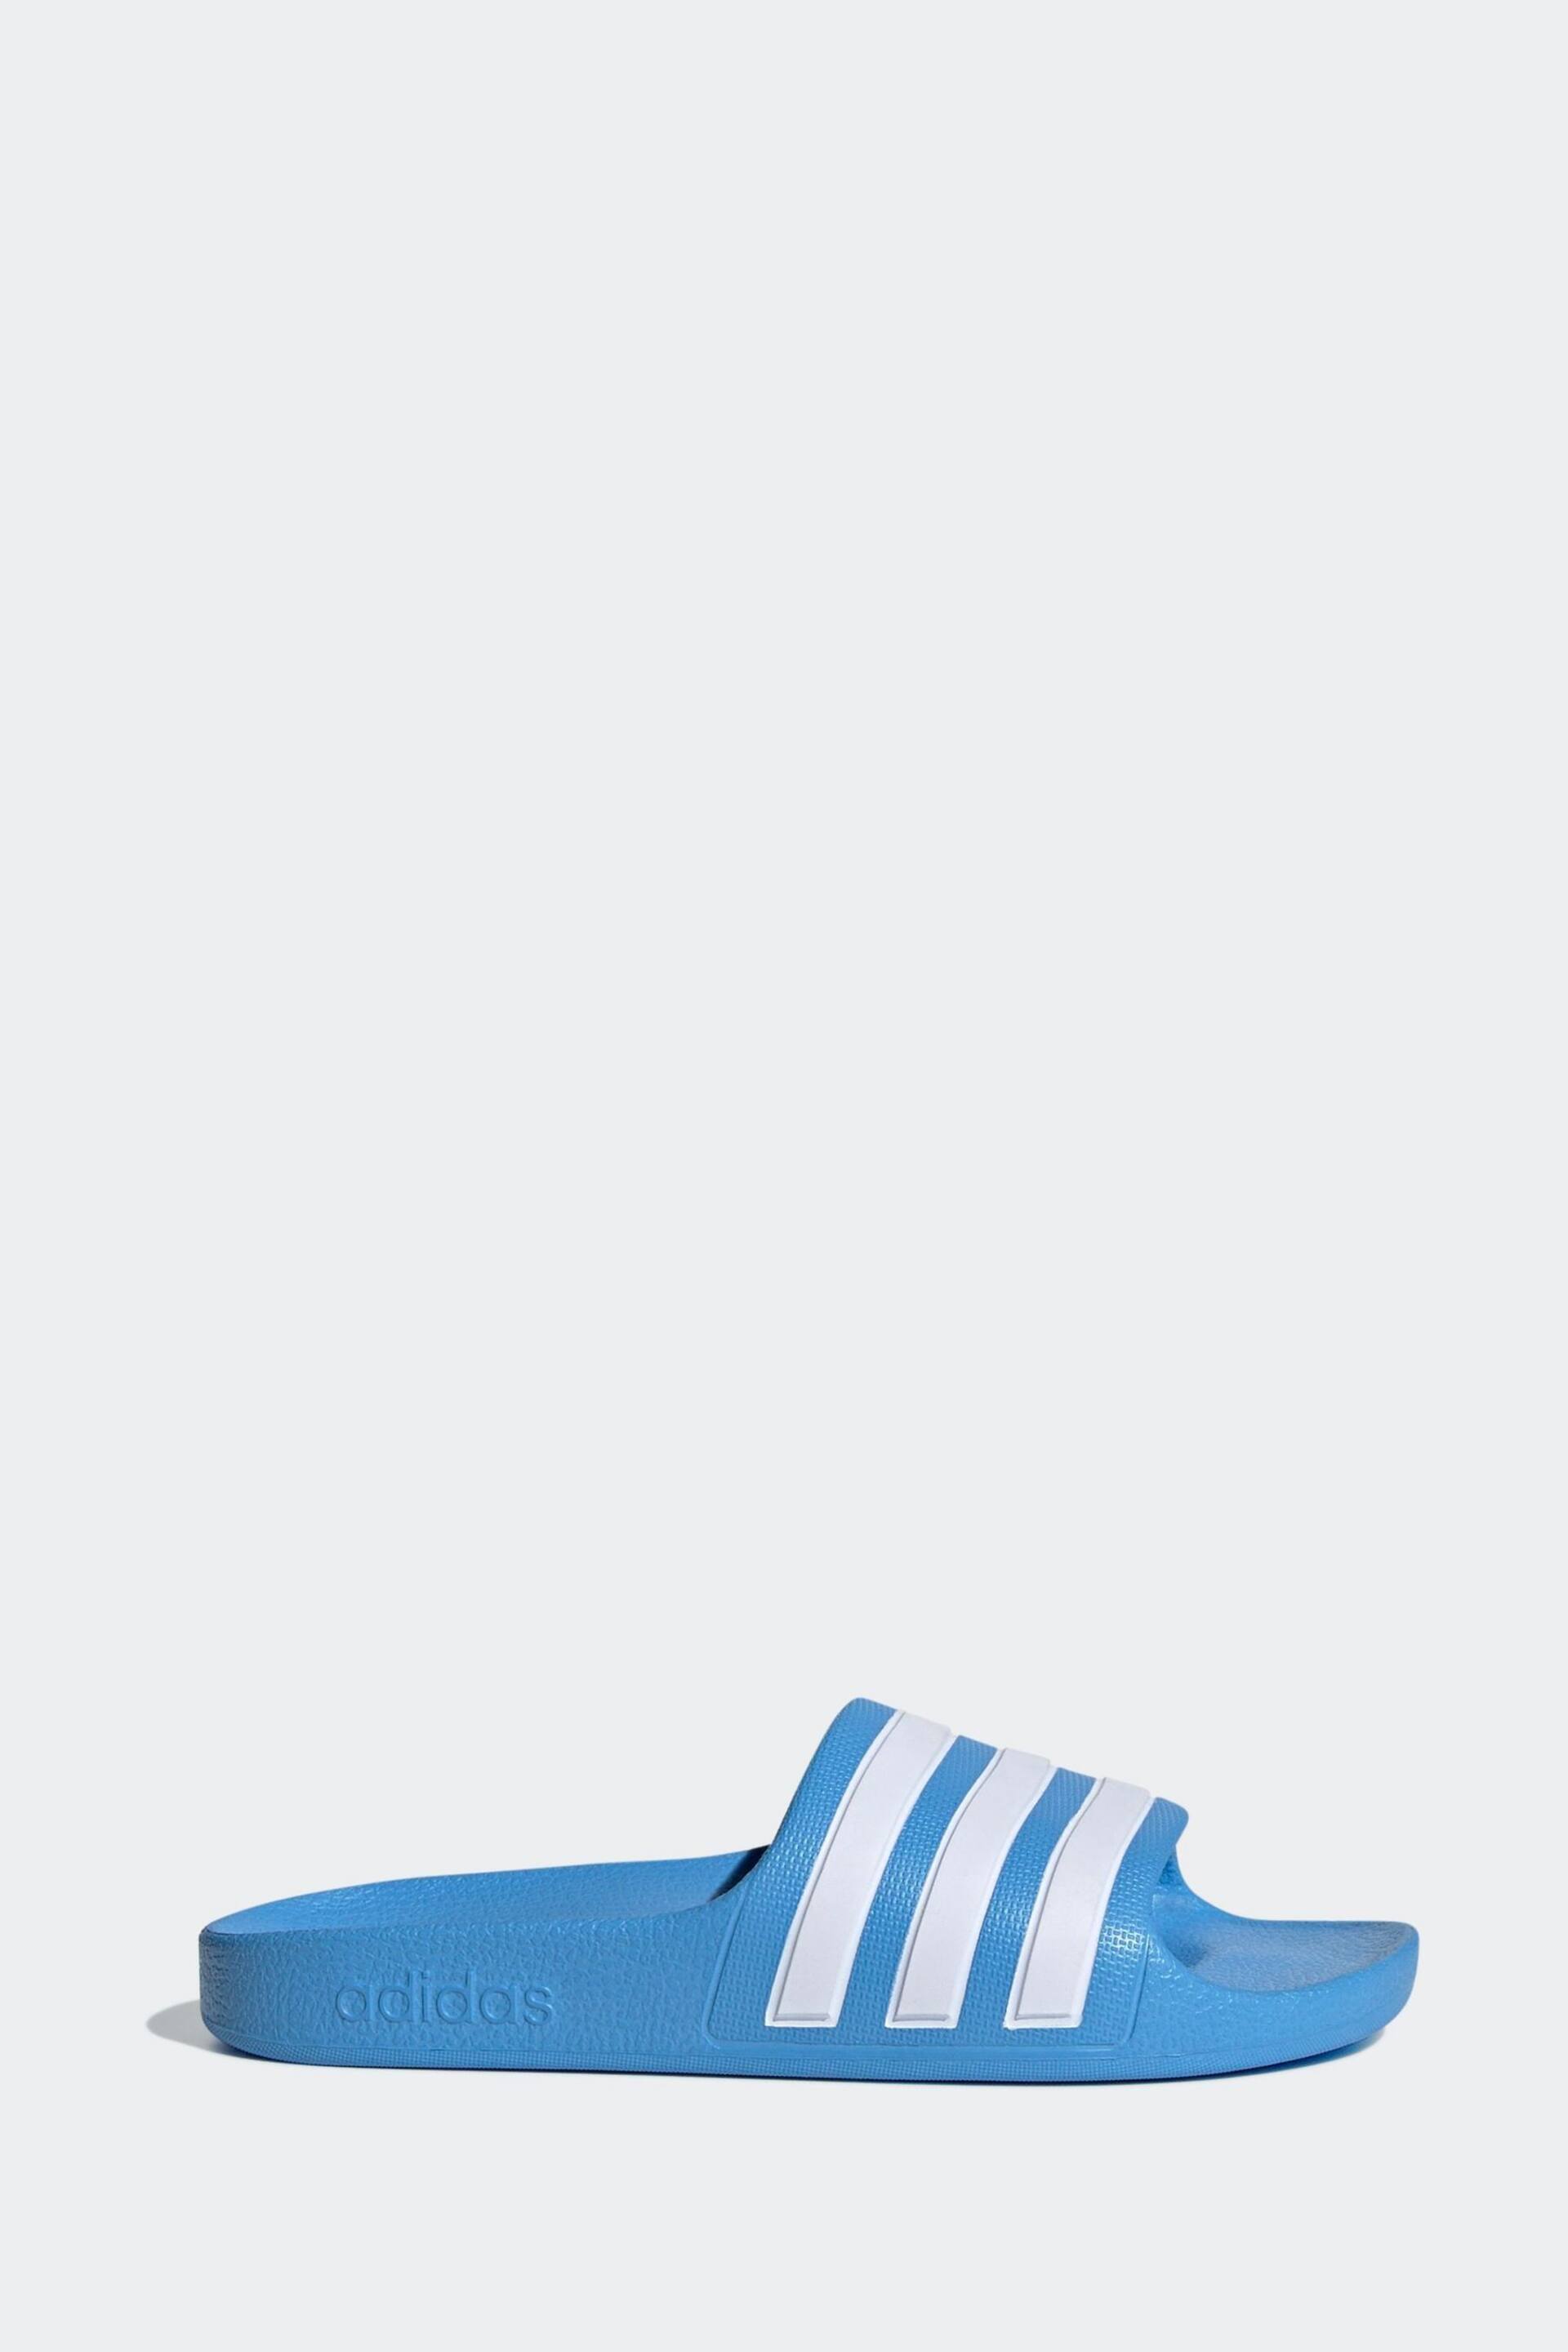 adidas Blue Adilette Youth Kids Sliders - Image 1 of 11